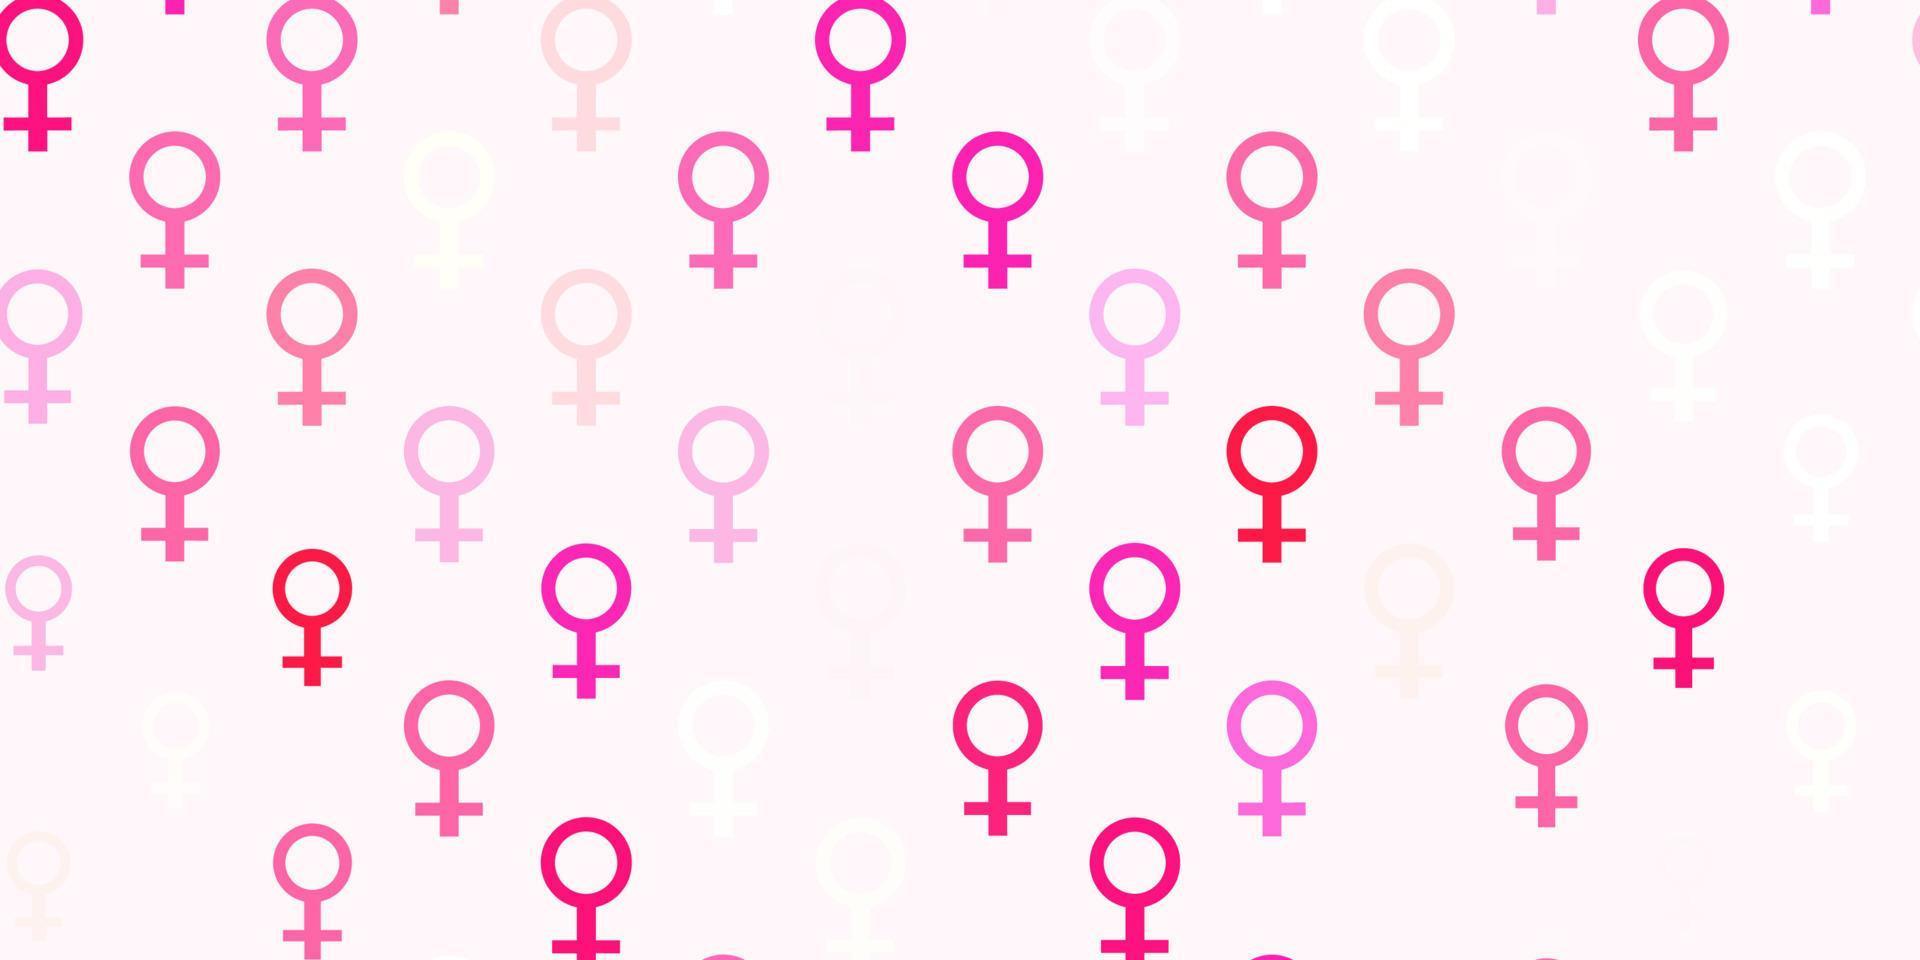 struttura vettoriale rosso chiaro con simboli dei diritti delle donne.